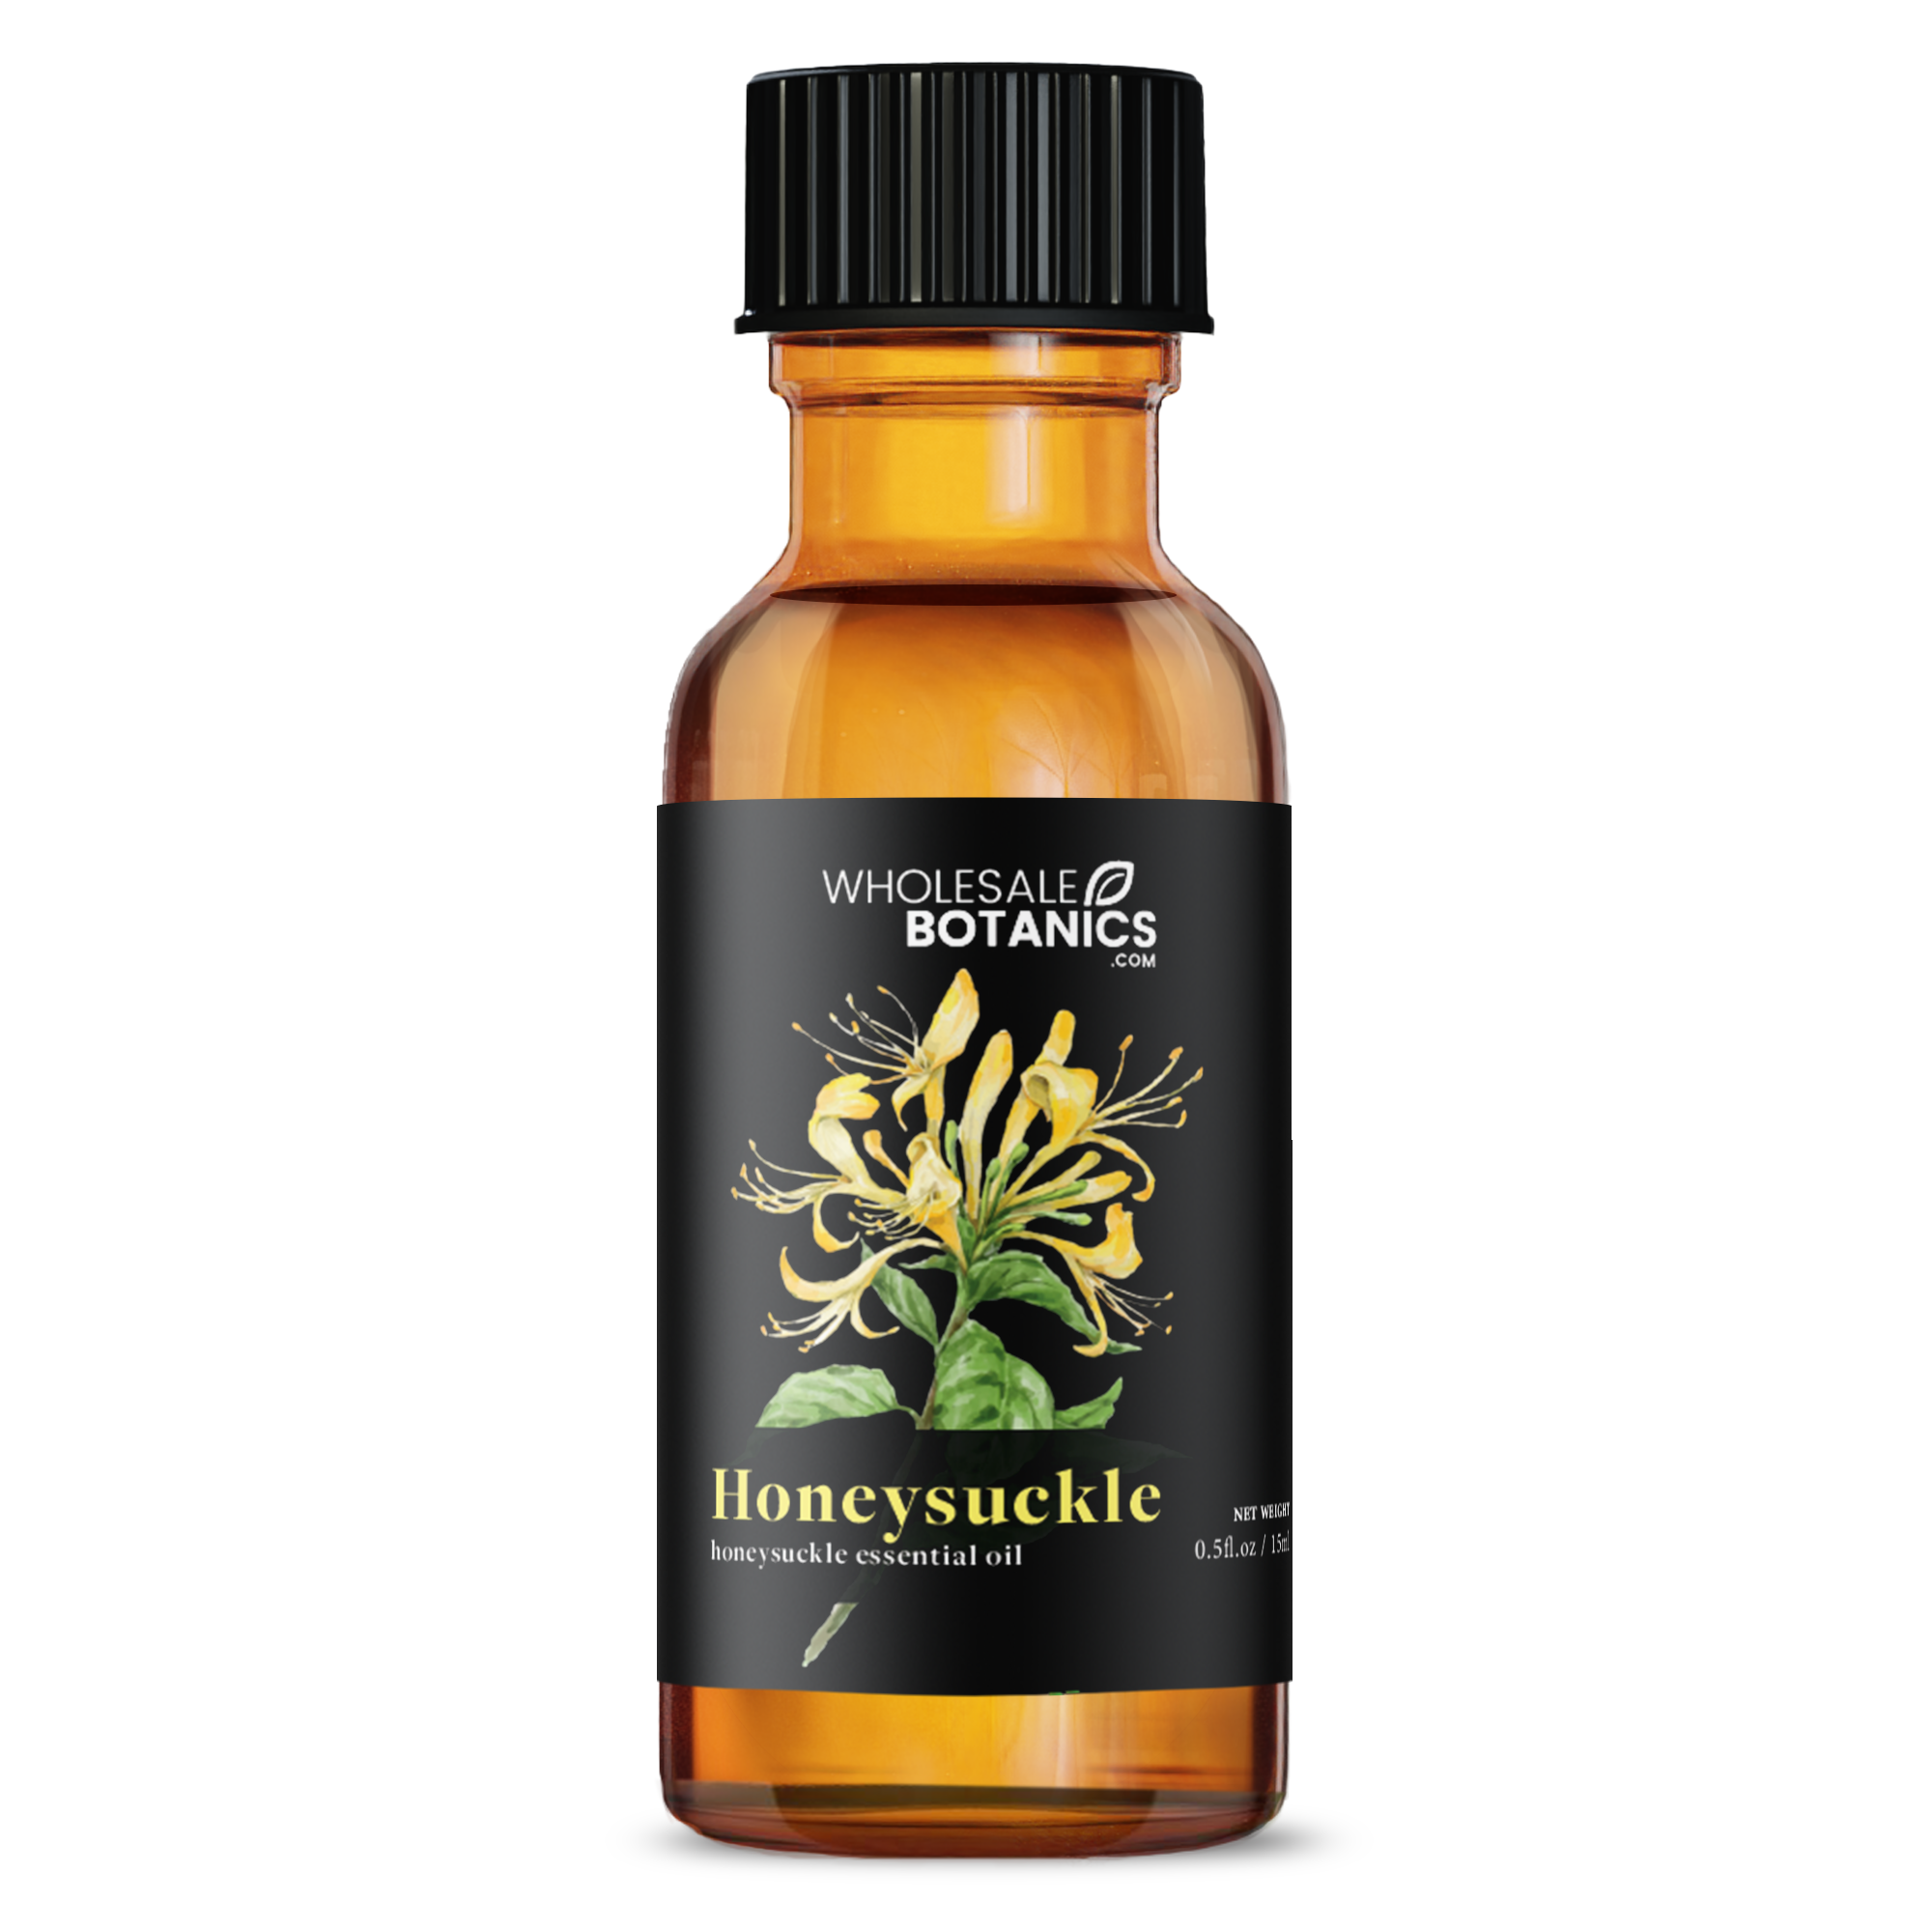 Honeysuckle Oil